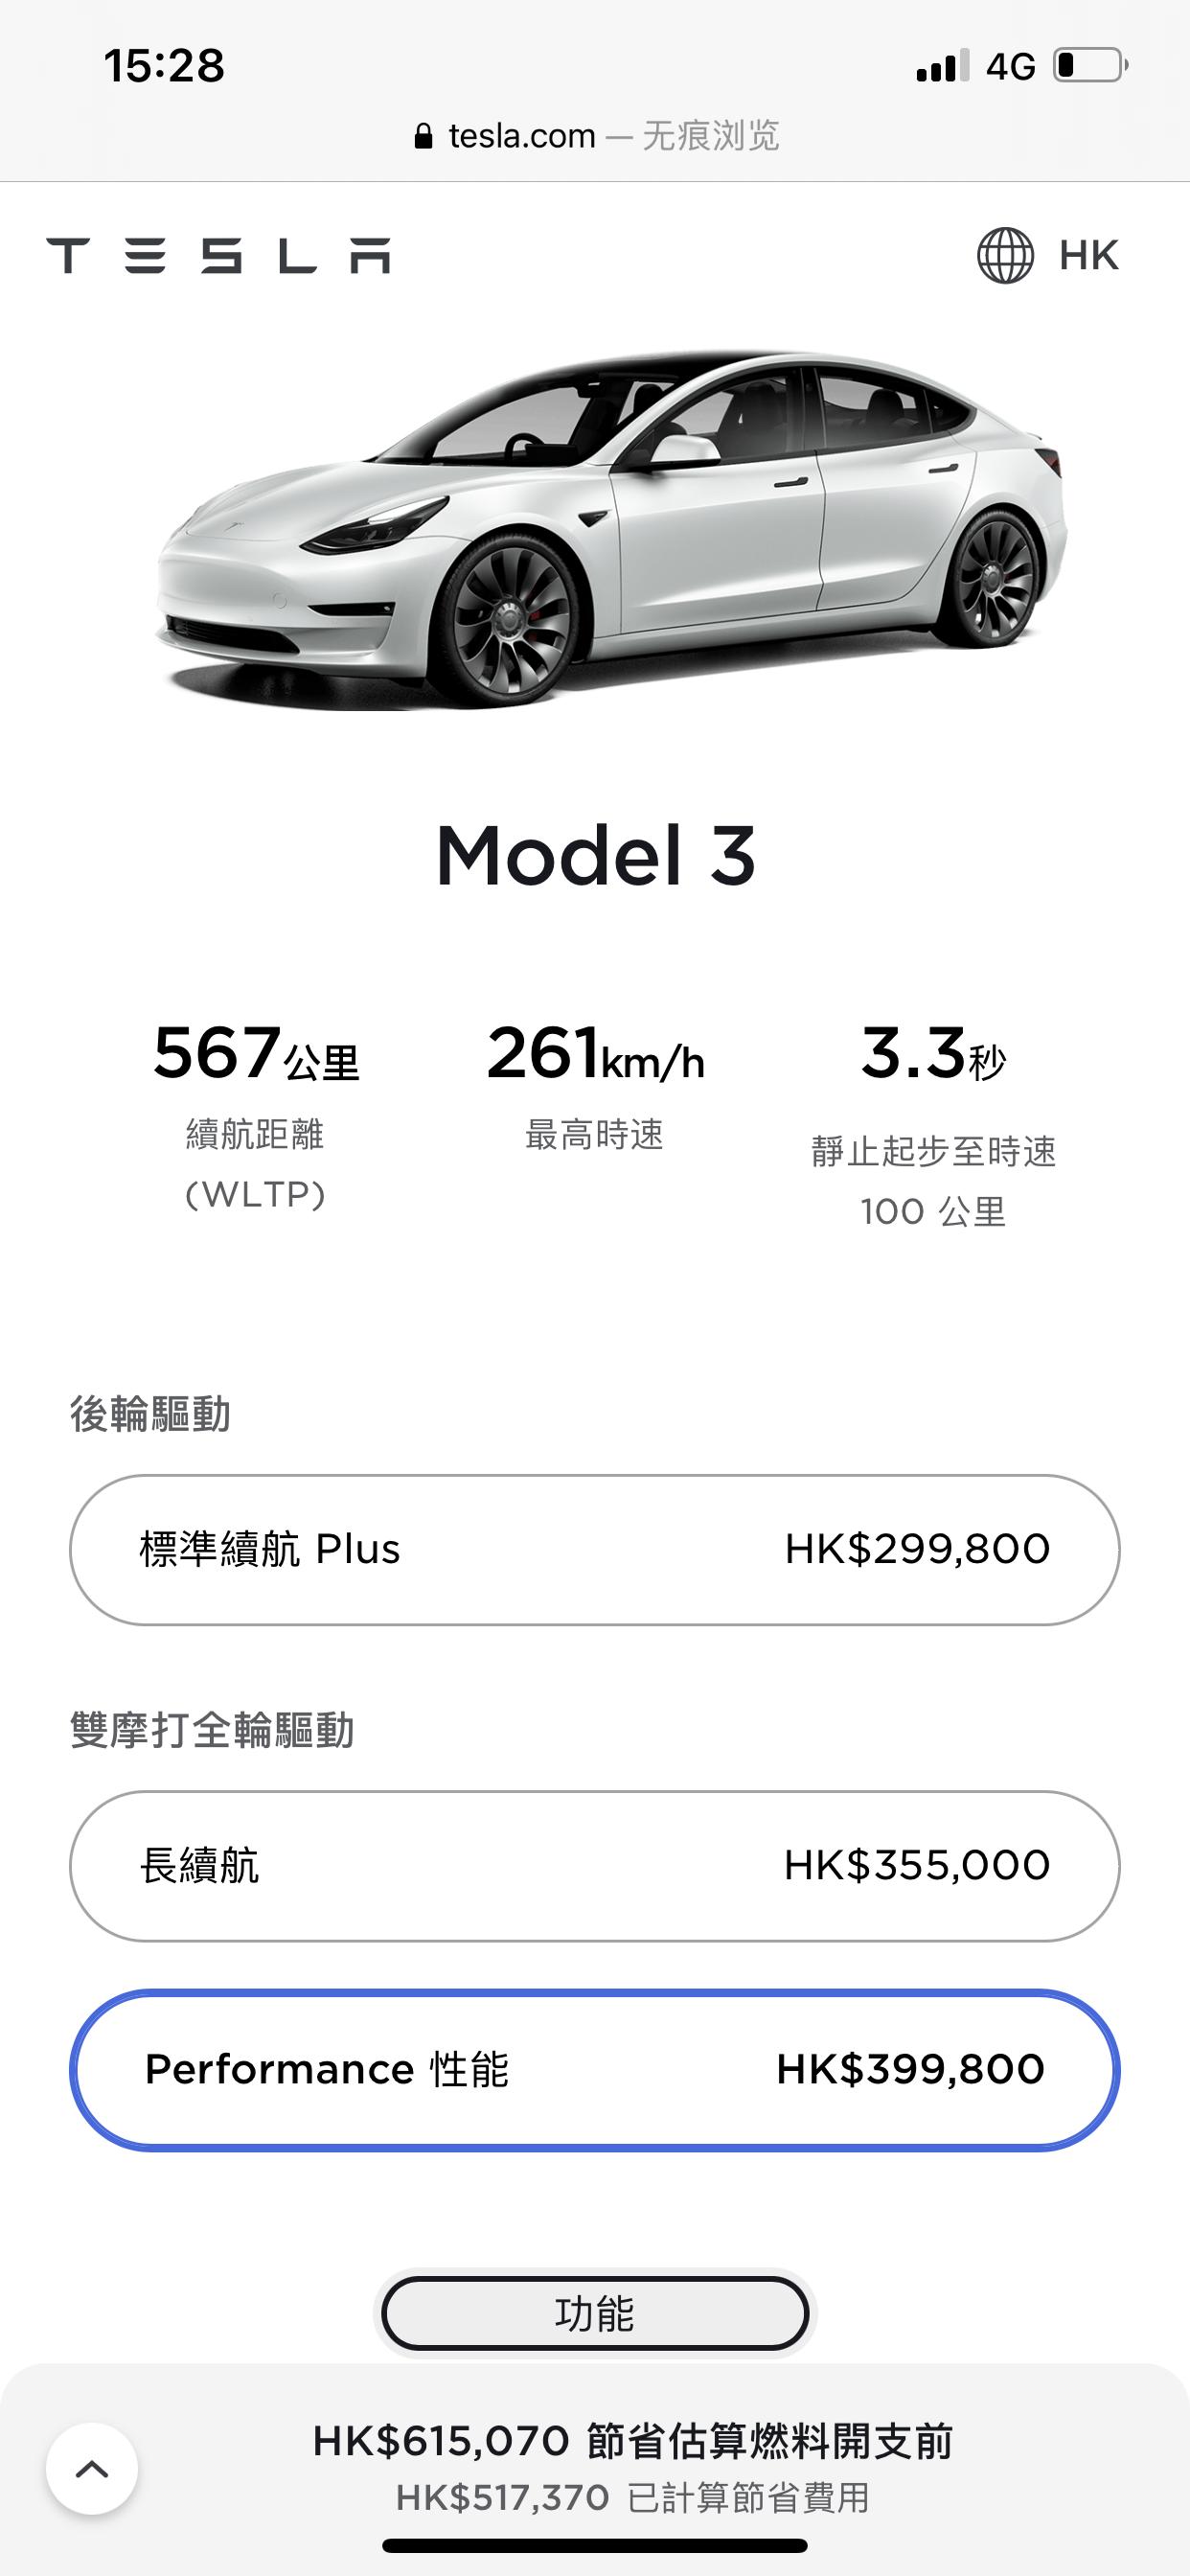 特斯拉Model 3 香港官网m3p更新了好像，换了20寸轮毂？ 加了续航？ 记不太清了 有老哥解读一下吗，下周就要提3